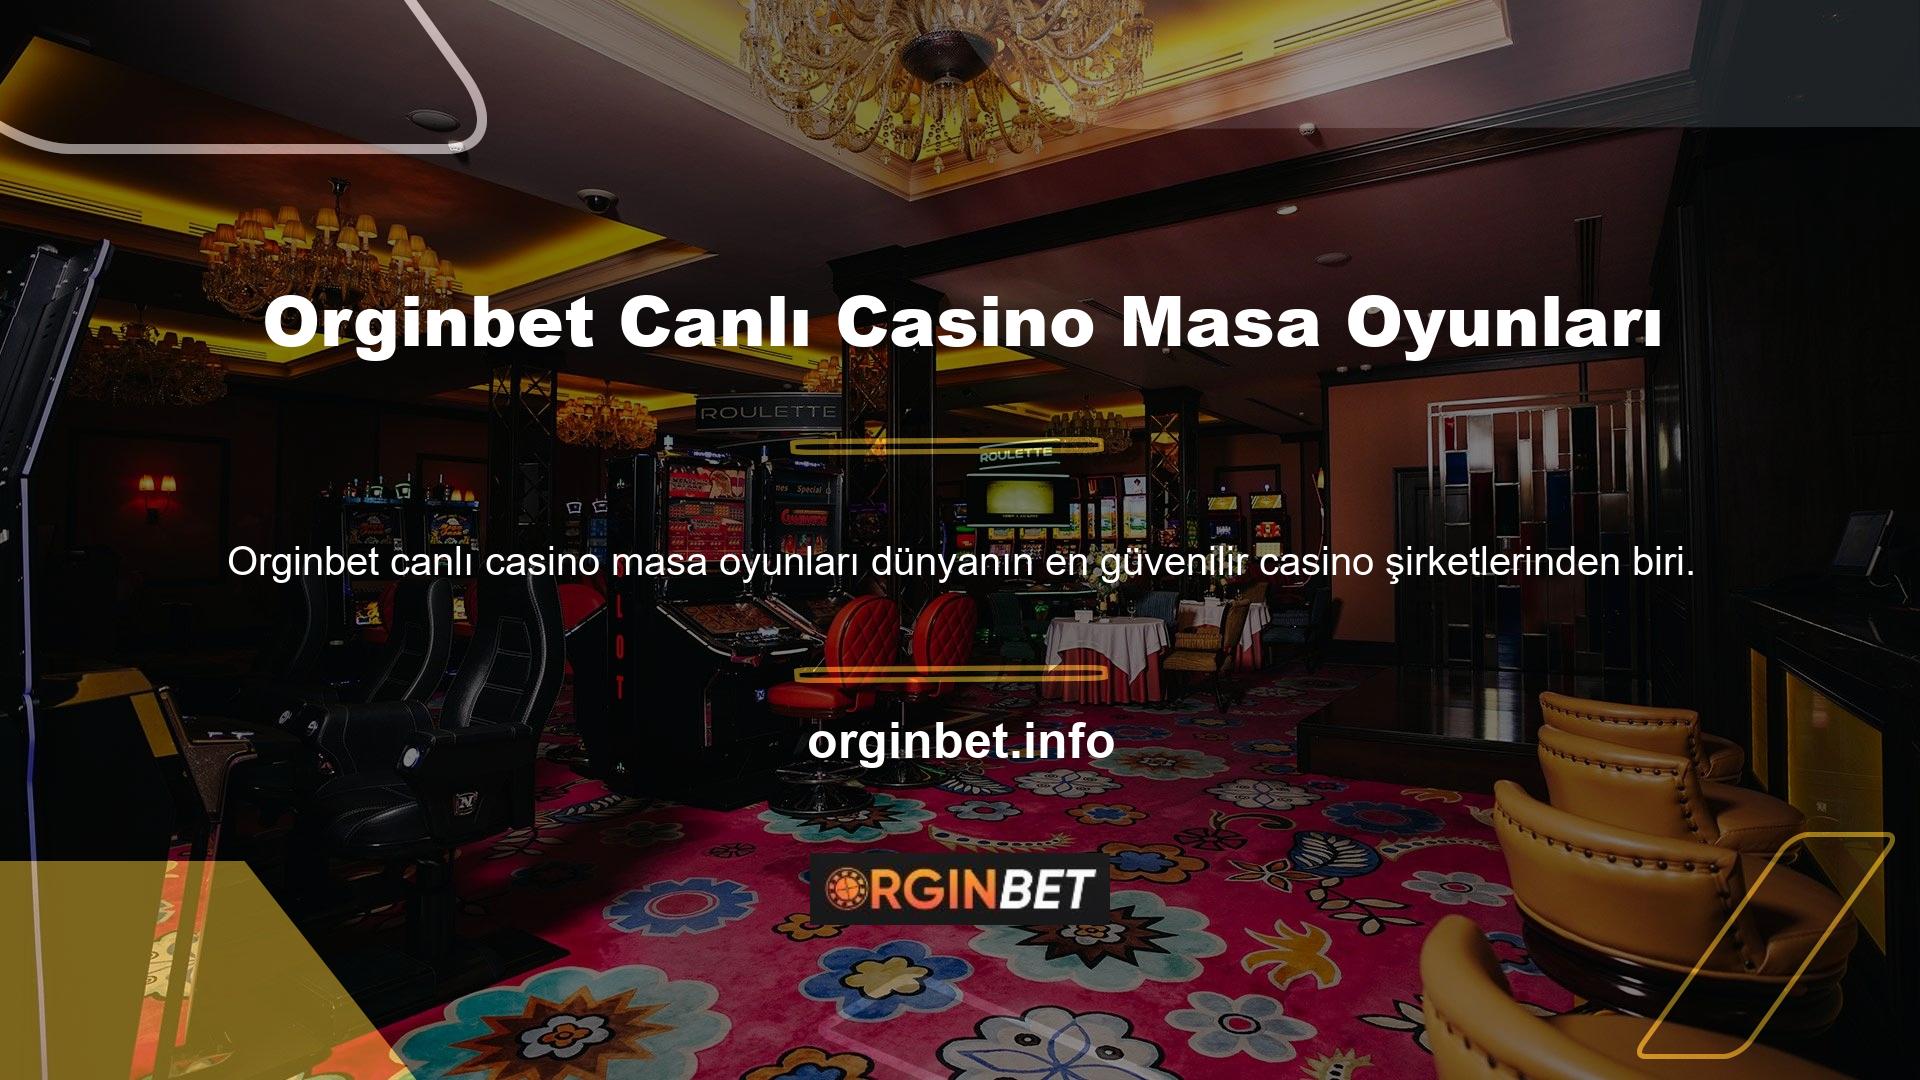 Yeni Orginbet Casino giriş bölümüne girerek siteye herhangi bir ücret ödemeden üye olabilirsiniz